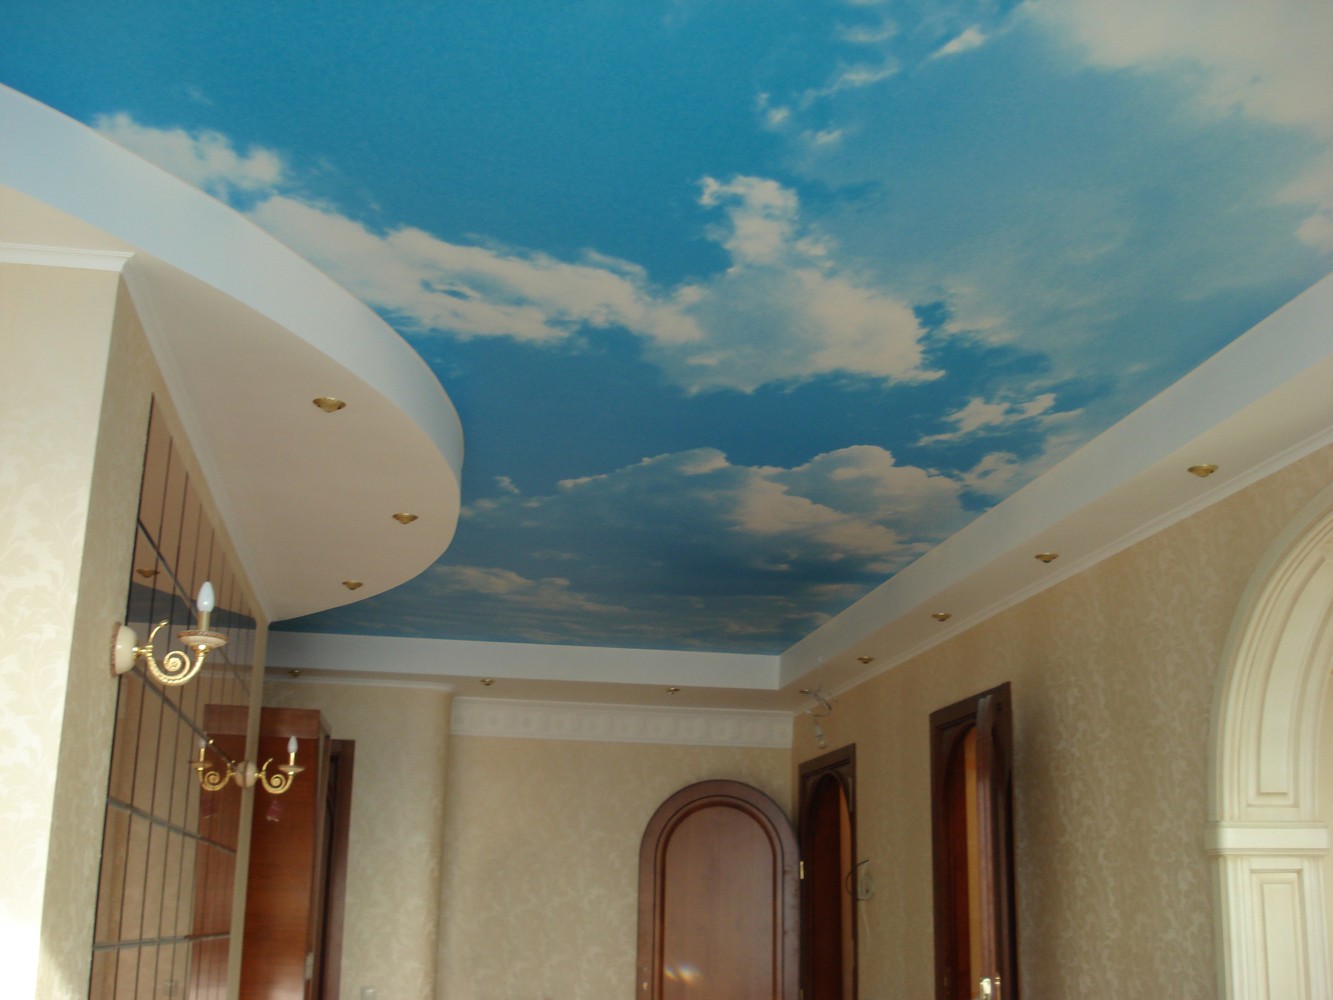 Обои с облаками для визуального расширения комнаты: советы по выбору и оклейке на потолок